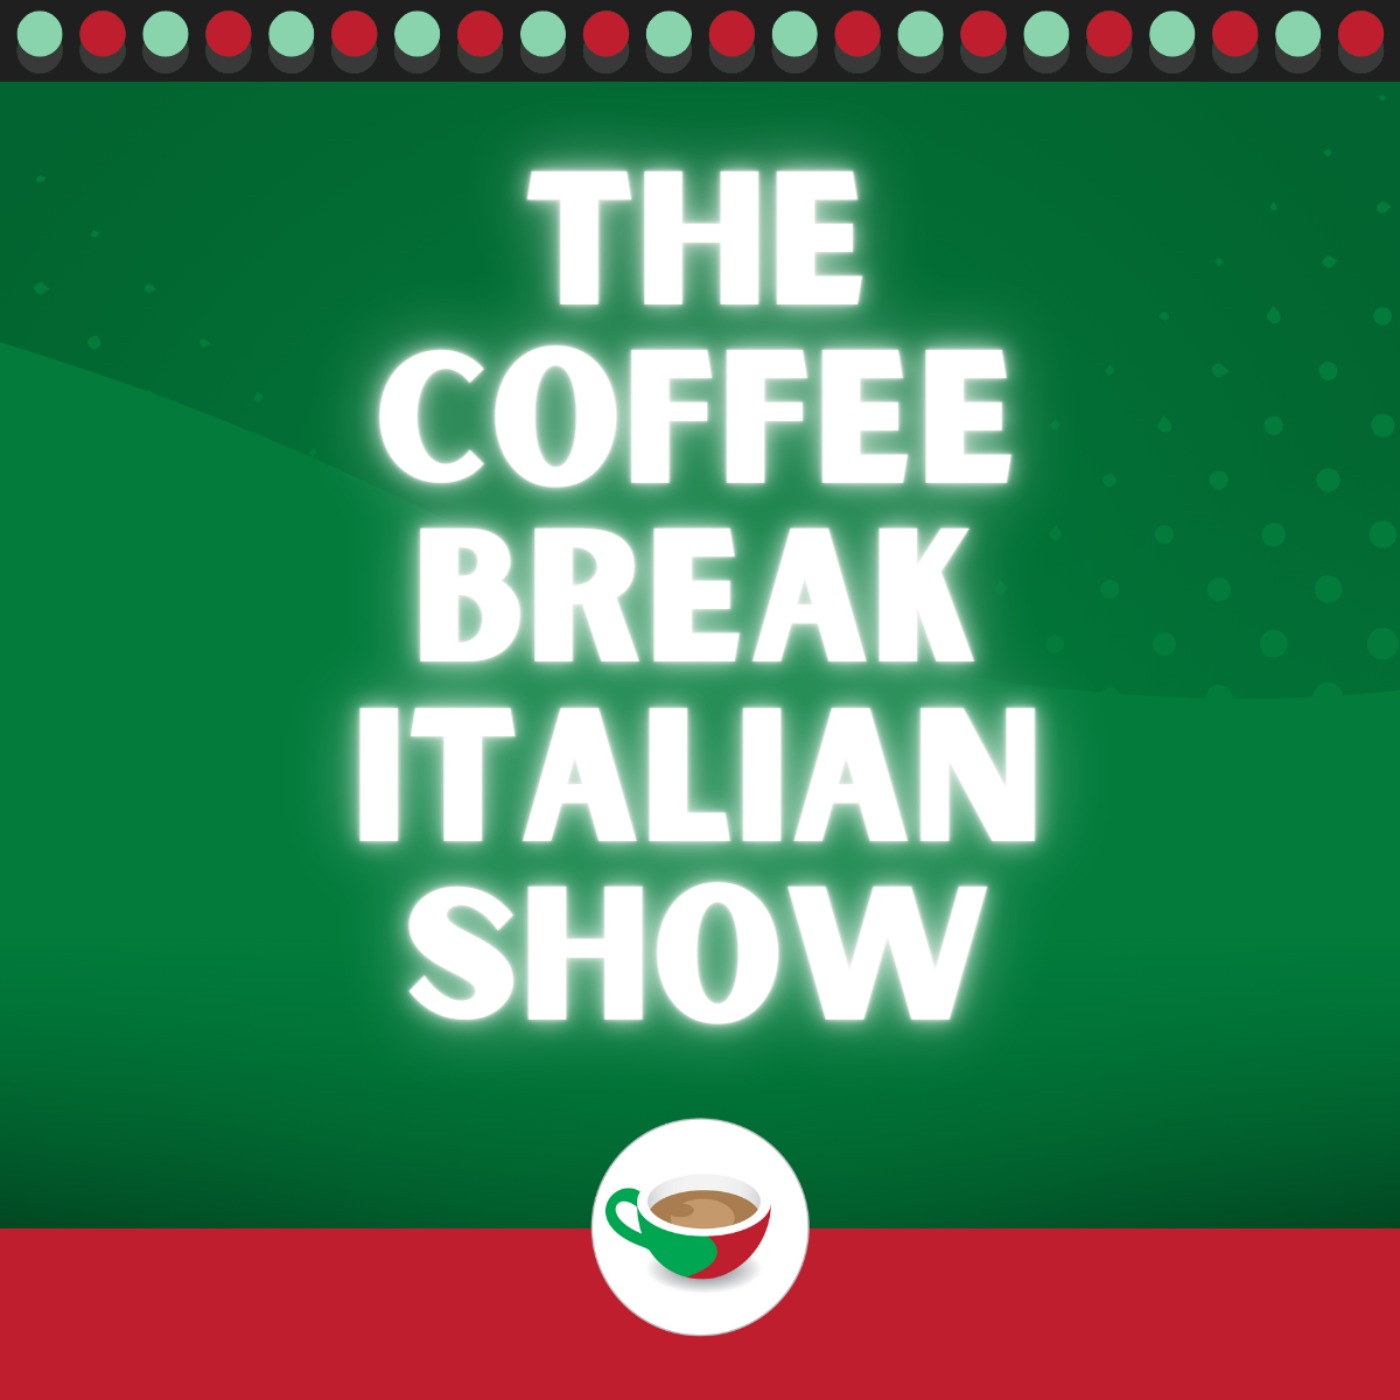 Introducing the Coffee Break Italian Show